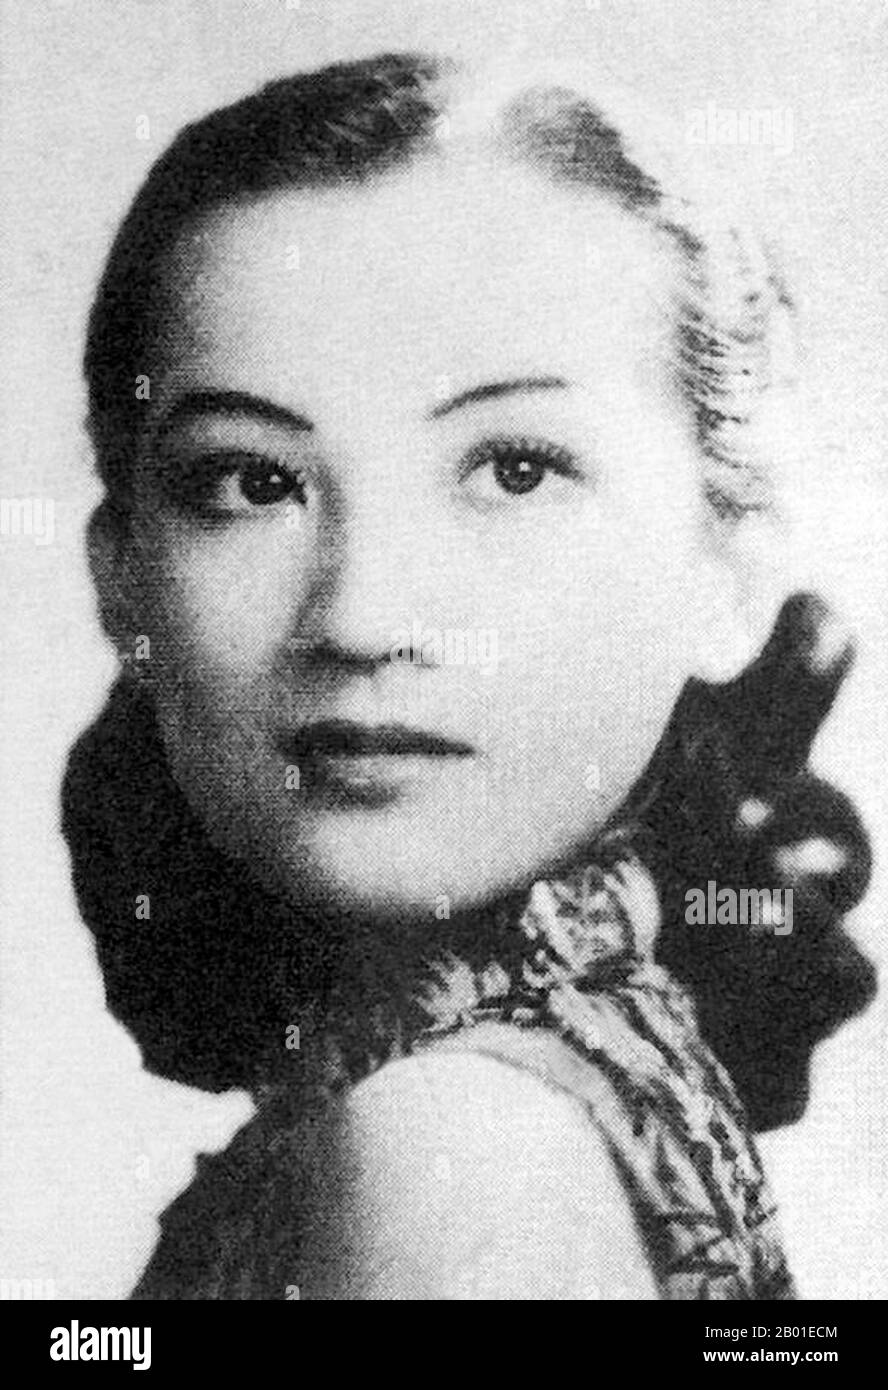 Cina: Zhou Xuan (周璇, 1 agosto 1918 - 22 settembre 1957), cantante e attrice cinese, 1940. Negli anni '1940s, era diventata una delle sette grandi stelle cantanti della Cina. È probabilmente la più conosciuta dei sette, poiché ha avuto una carriera cinematografica simultanea fino al 1953. Zhou è stato sopportato su pu (蘇璞), ma è stato separato dai suoi genitori naturali ad un'età giovane ed è stato alzato dai genitori adottivi. Ha trascorso tutta la sua vita alla ricerca dei suoi genitori biologici, ma la sua parentela non è mai stata stabilita fino a dopo la sua morte. All'età di 13 ha preso Zhou Xuan come suo nome di fase, 'Xuan' che significa 'la giada bella '. Foto Stock